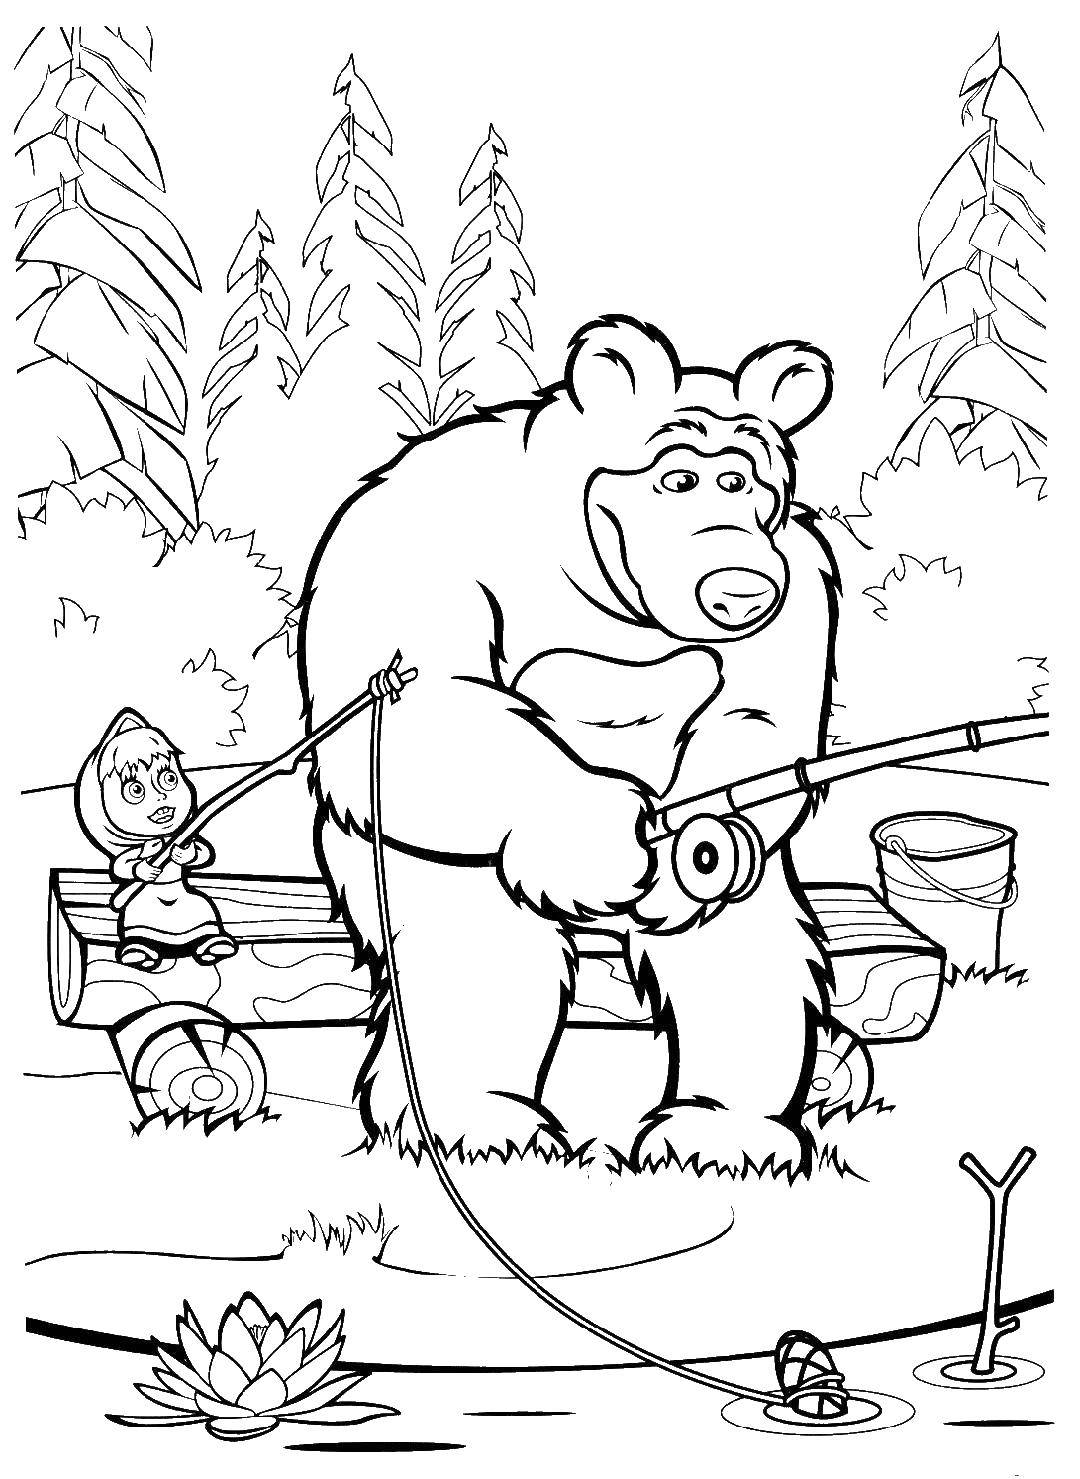 Раскраски для детей про озорную Машу из мультфильма Маша и медведь  Маша и медведь ловят рыбу